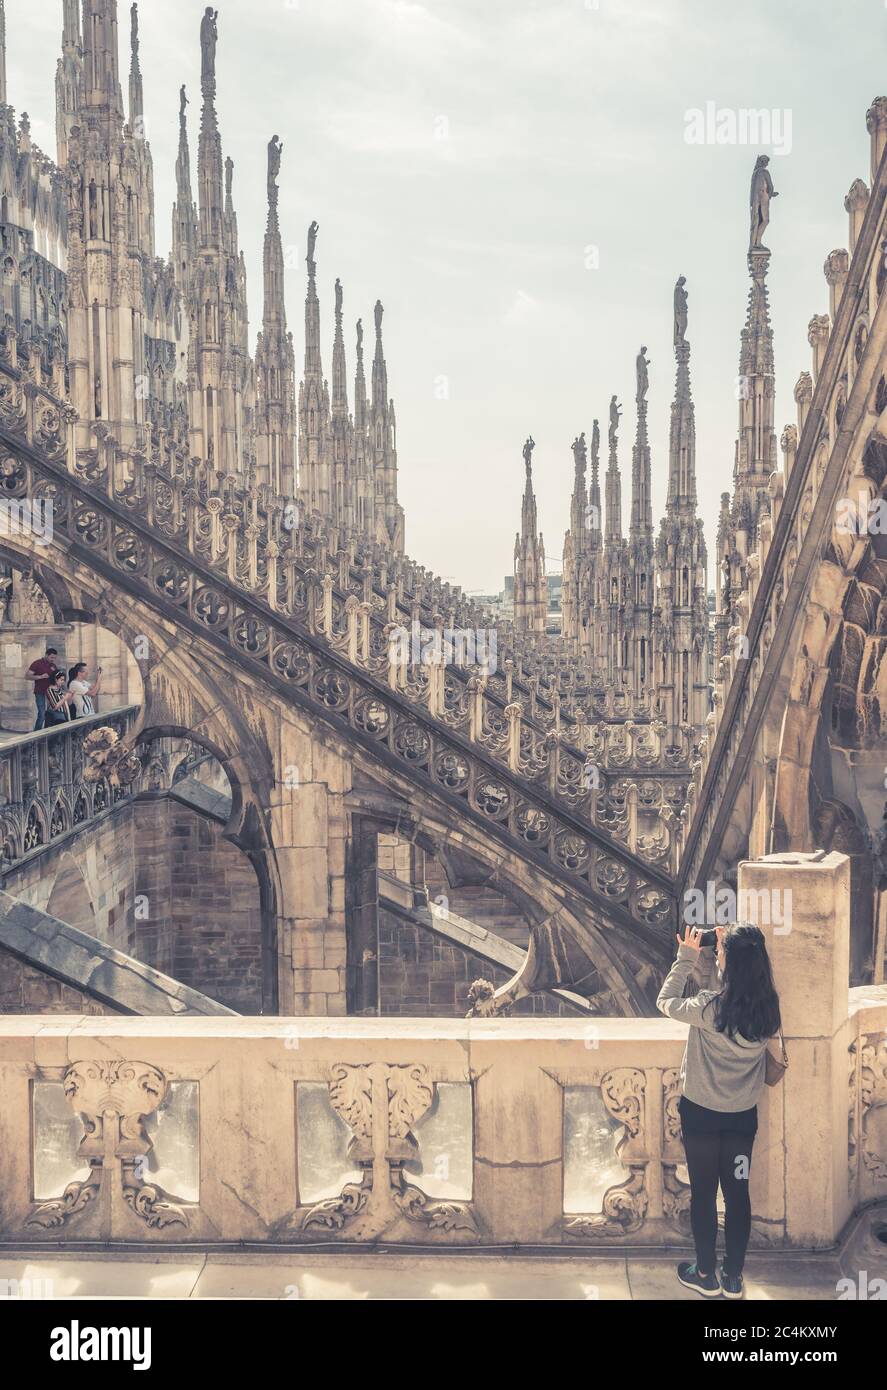 Mailand, Italien - 16. Mai 2017: Blick auf das Mailänder Domdach. Die Leute besuchen schöne Terrasse. Mailänder Dom oder Duomo di Milano ist Top-Touristen attractio Stockfoto